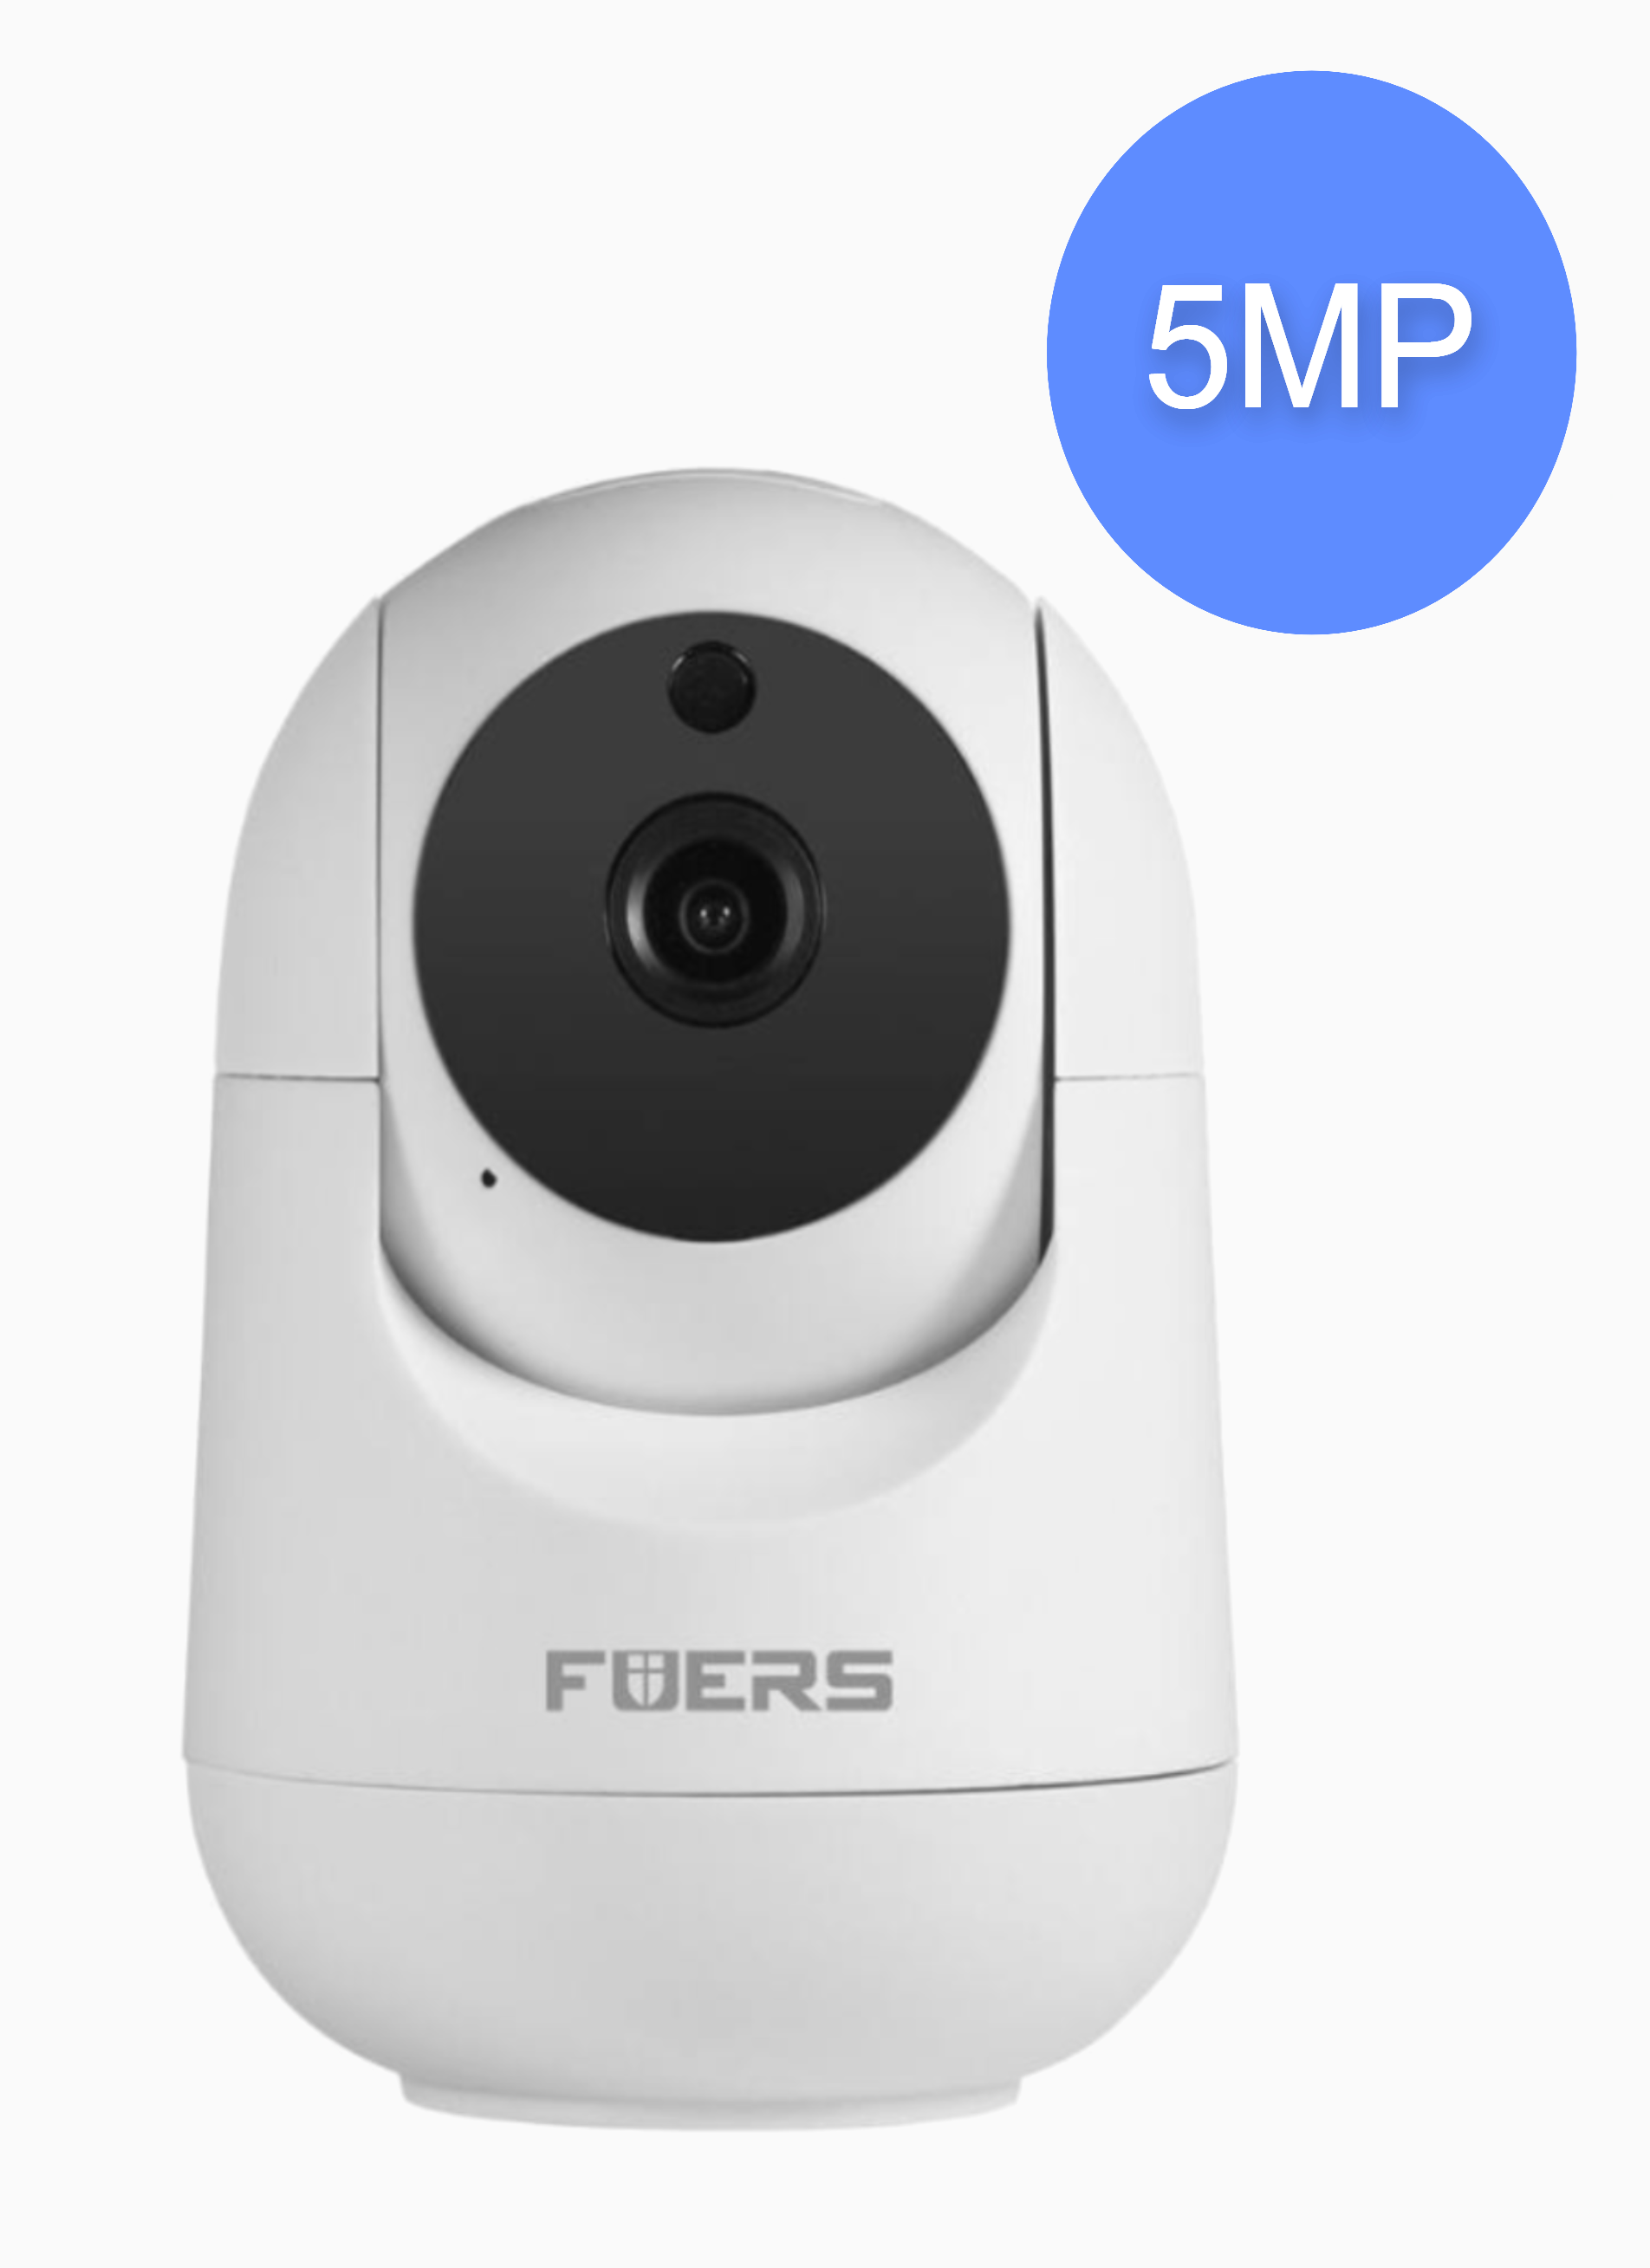 Камера видеонаблюдения Fuers P162, 5MP, wifi, без SD карты второе обновленное издание карты мира со